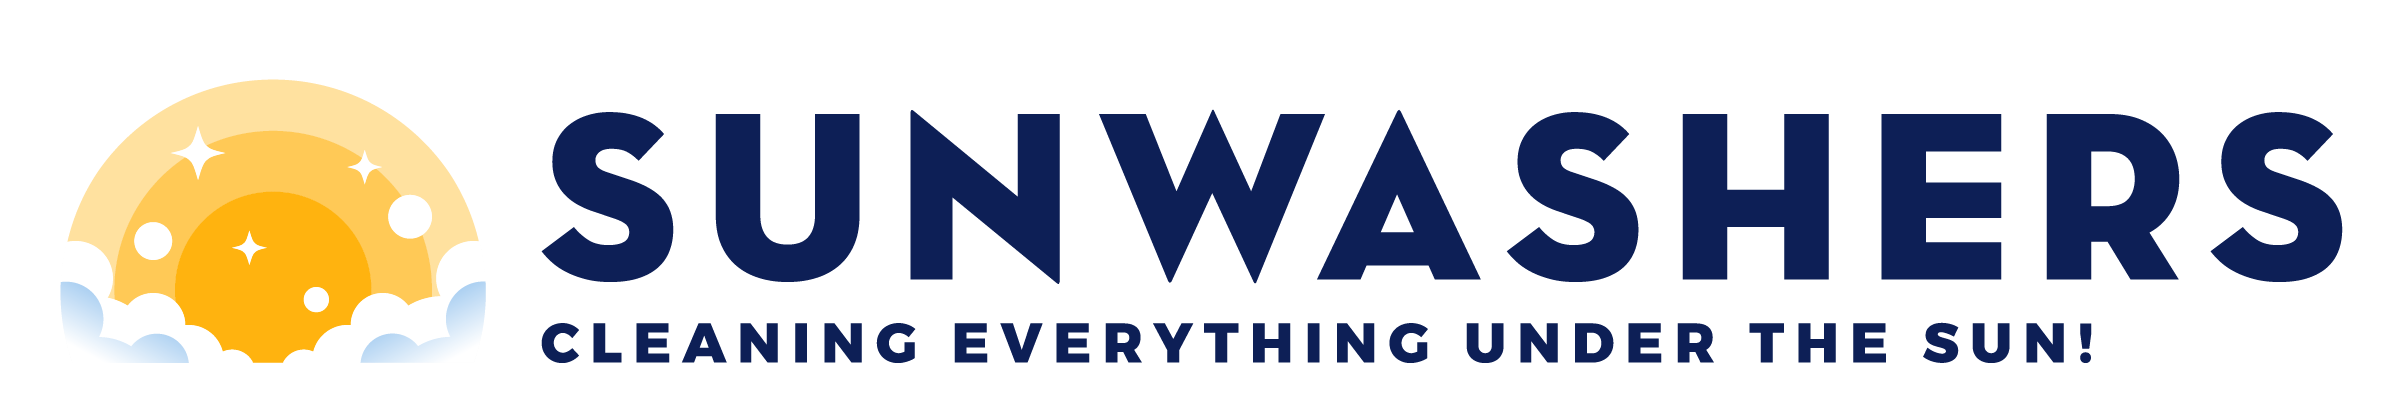 sunwashers-logo